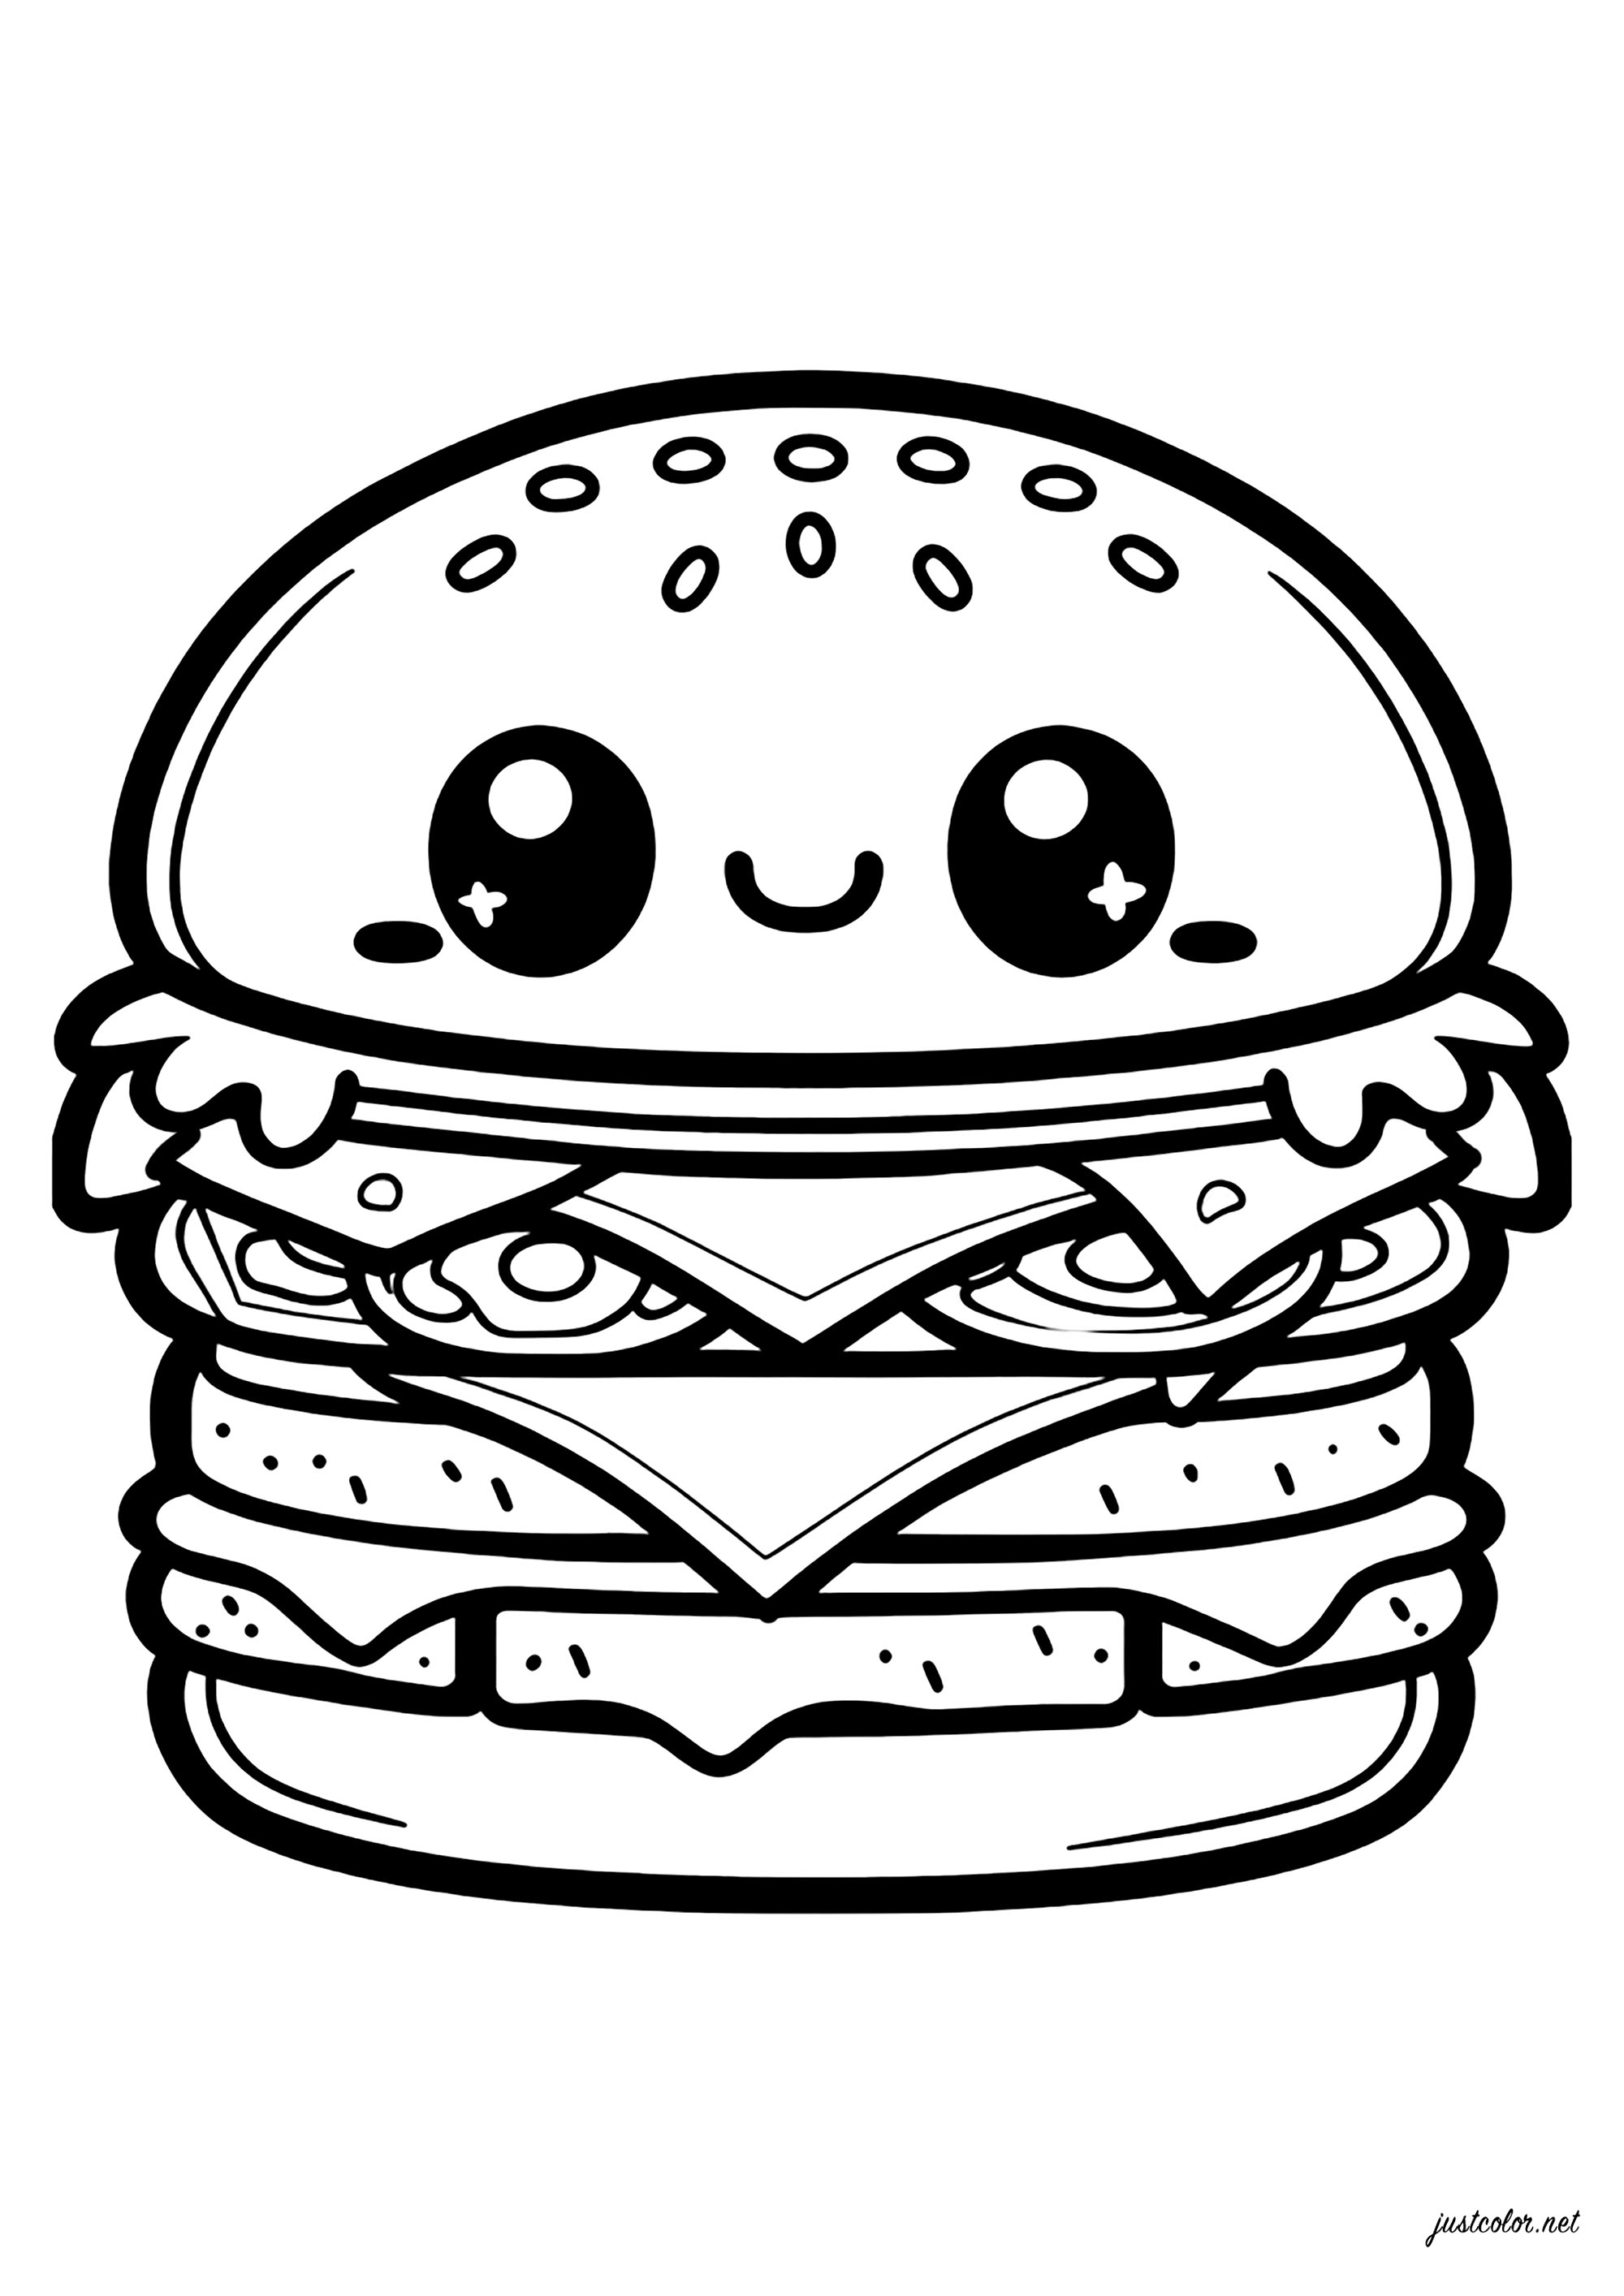 Hamburger gourmand. Hamburger dessiné avec le style kawaii avec plusieurs couches de nourriture : fromage, steak, tranches de tomates, salade, oignons ... Chaque couche est clairement définie, un vrai délice !